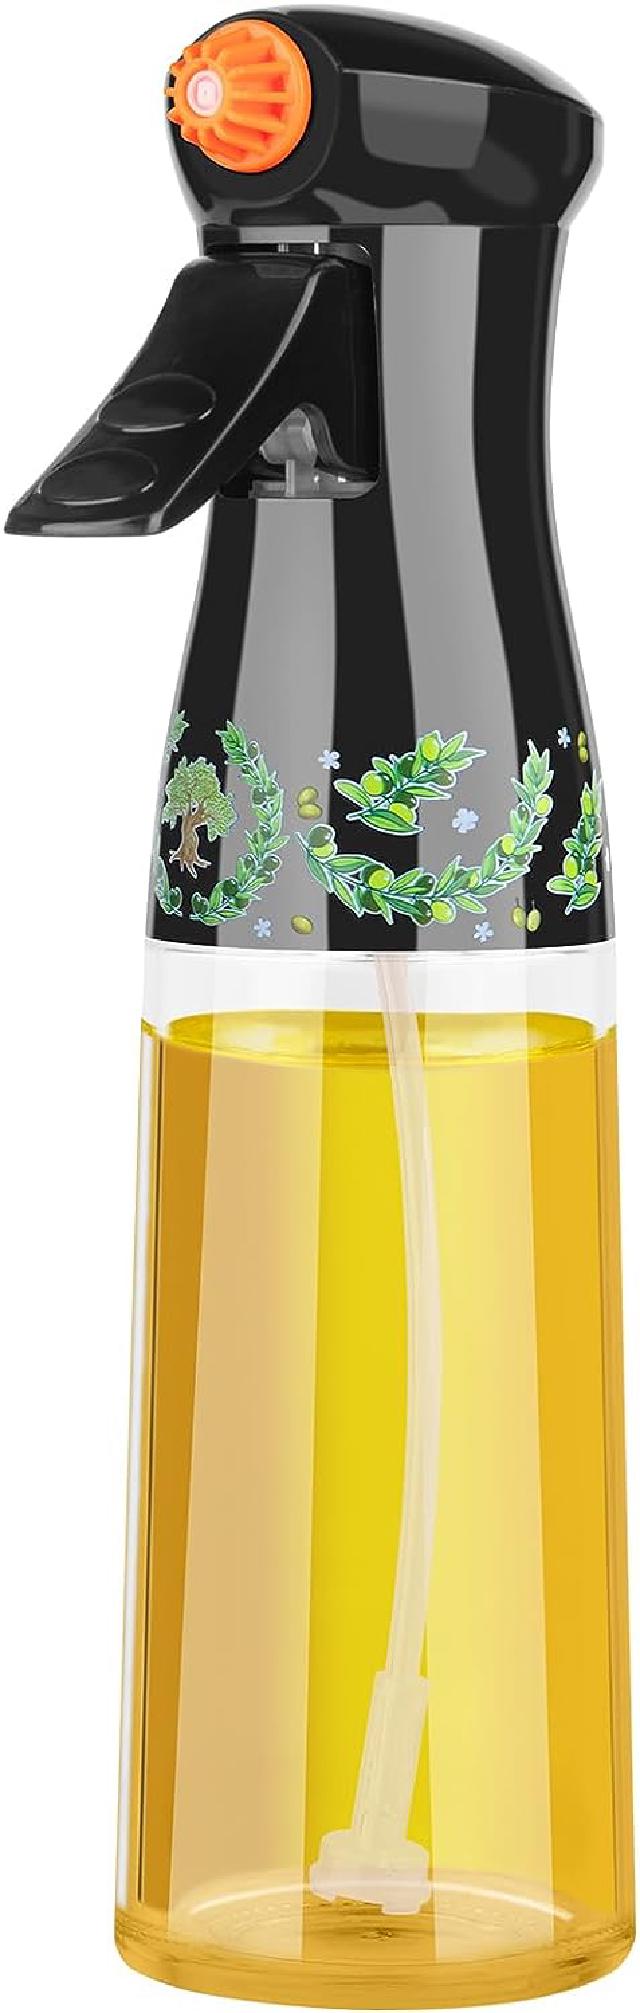 Honbuty Olive Oil Sprayer